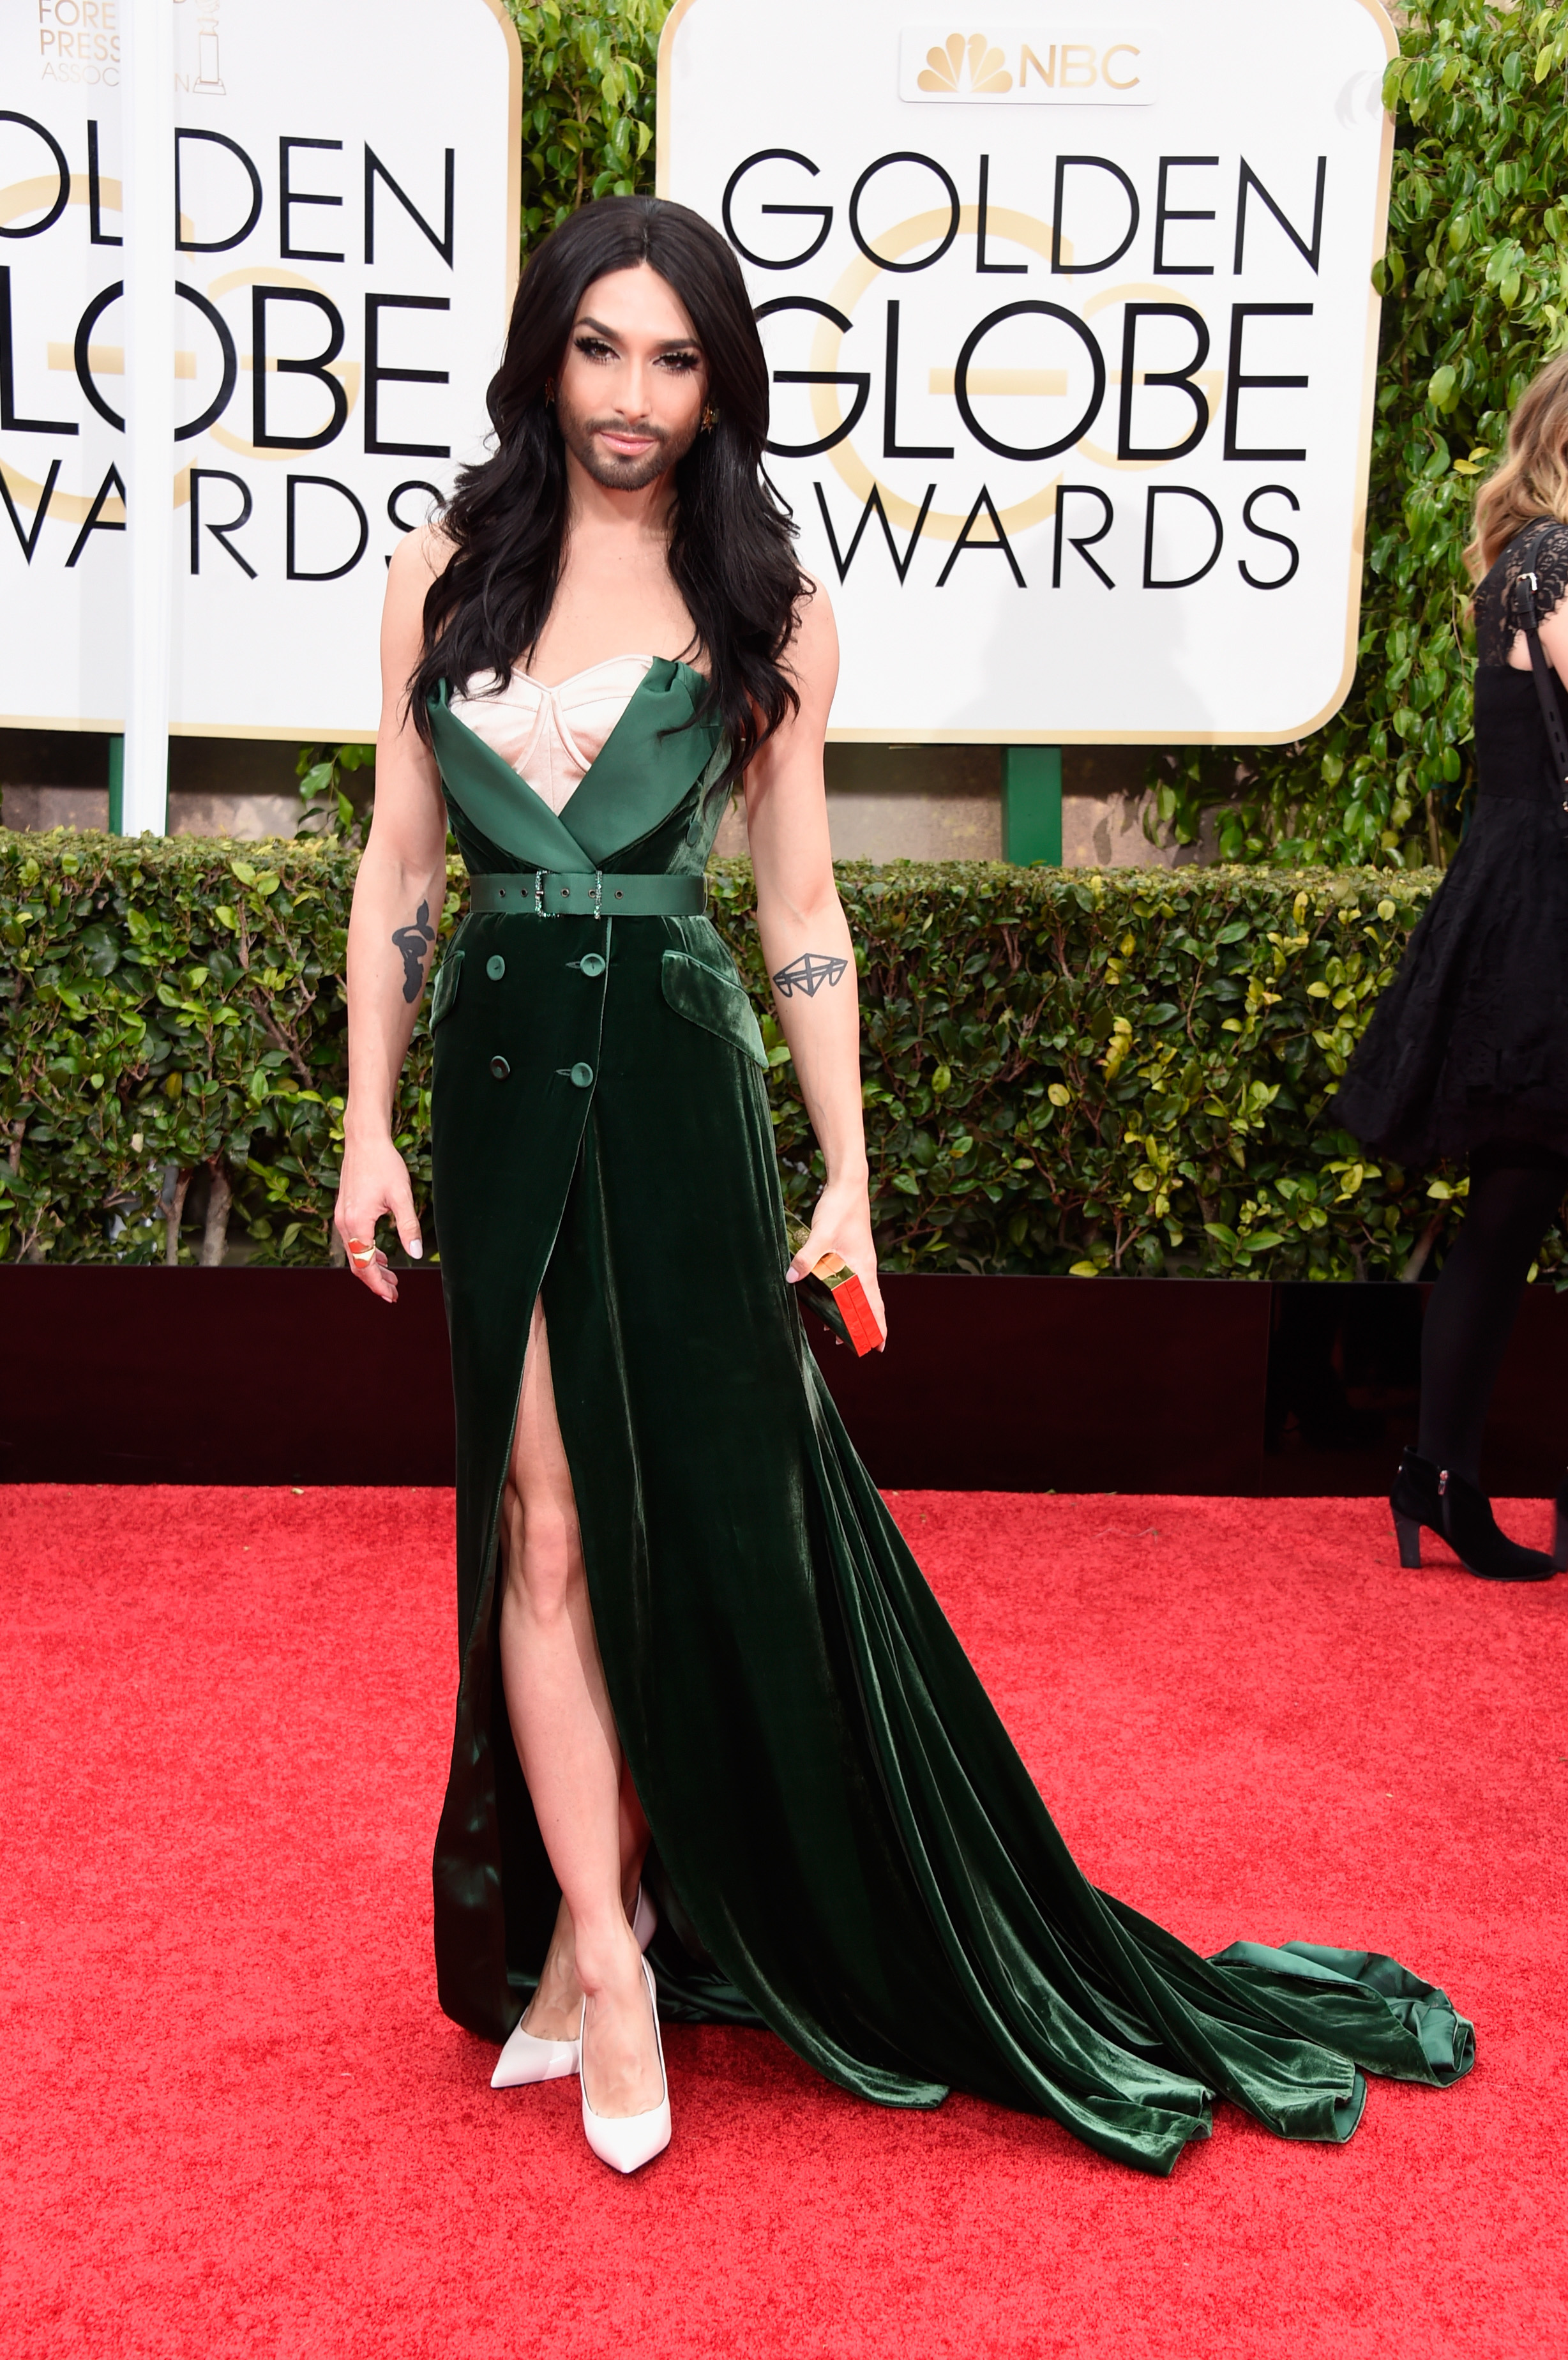 Golden Globes Red Carpet 2015